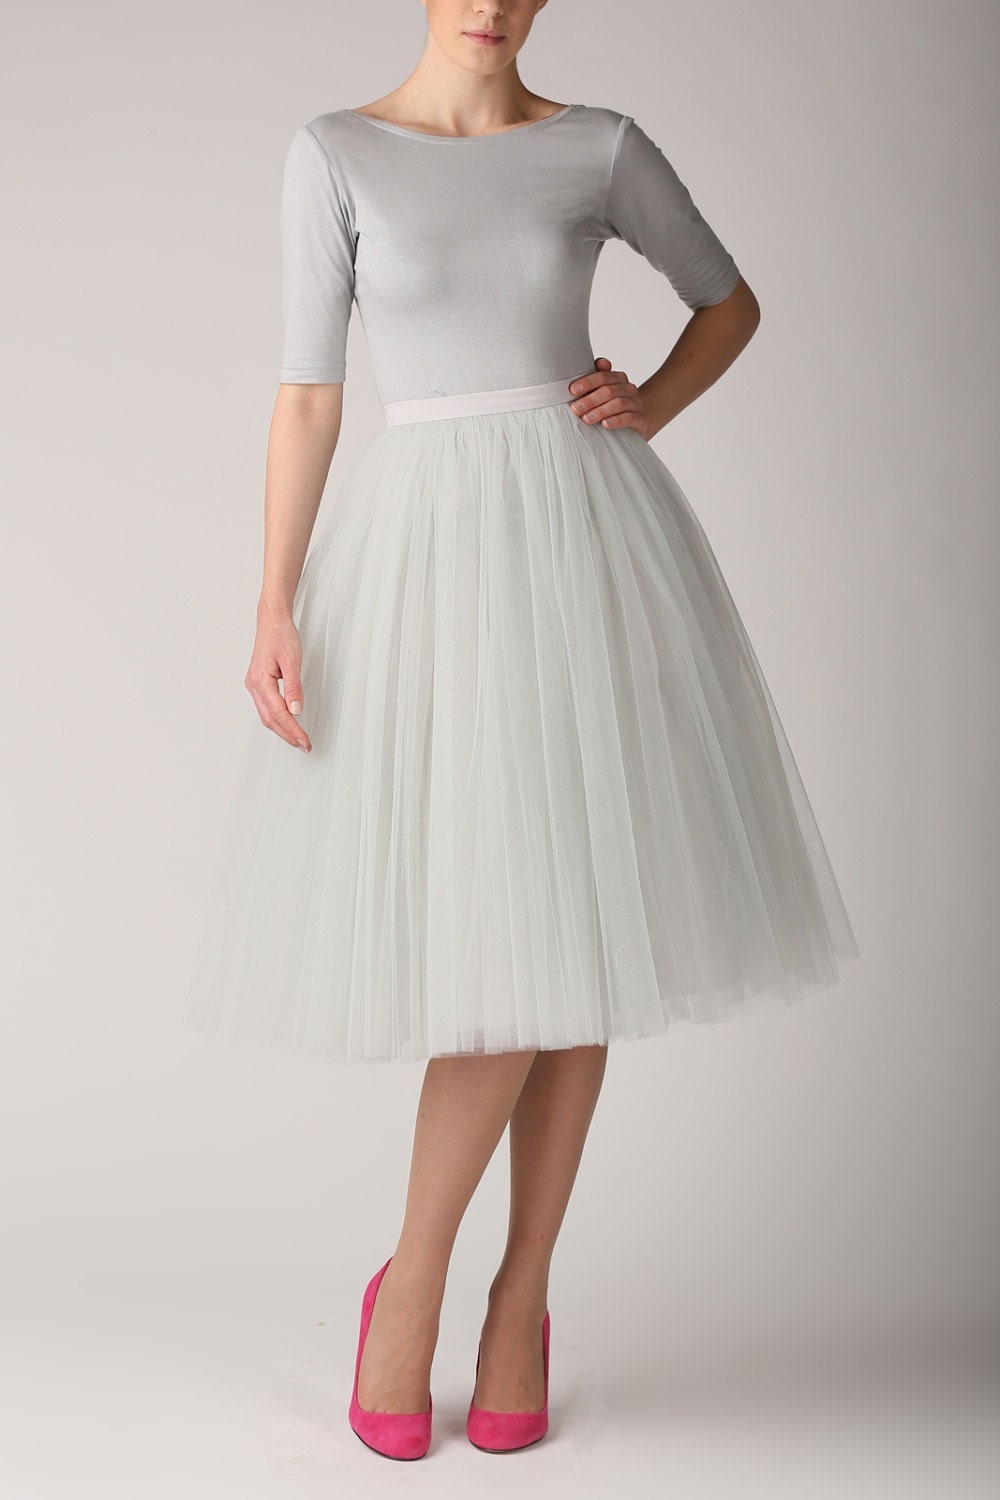 Grey pearl tutu skirt Handmade long skirt Handmade tulle